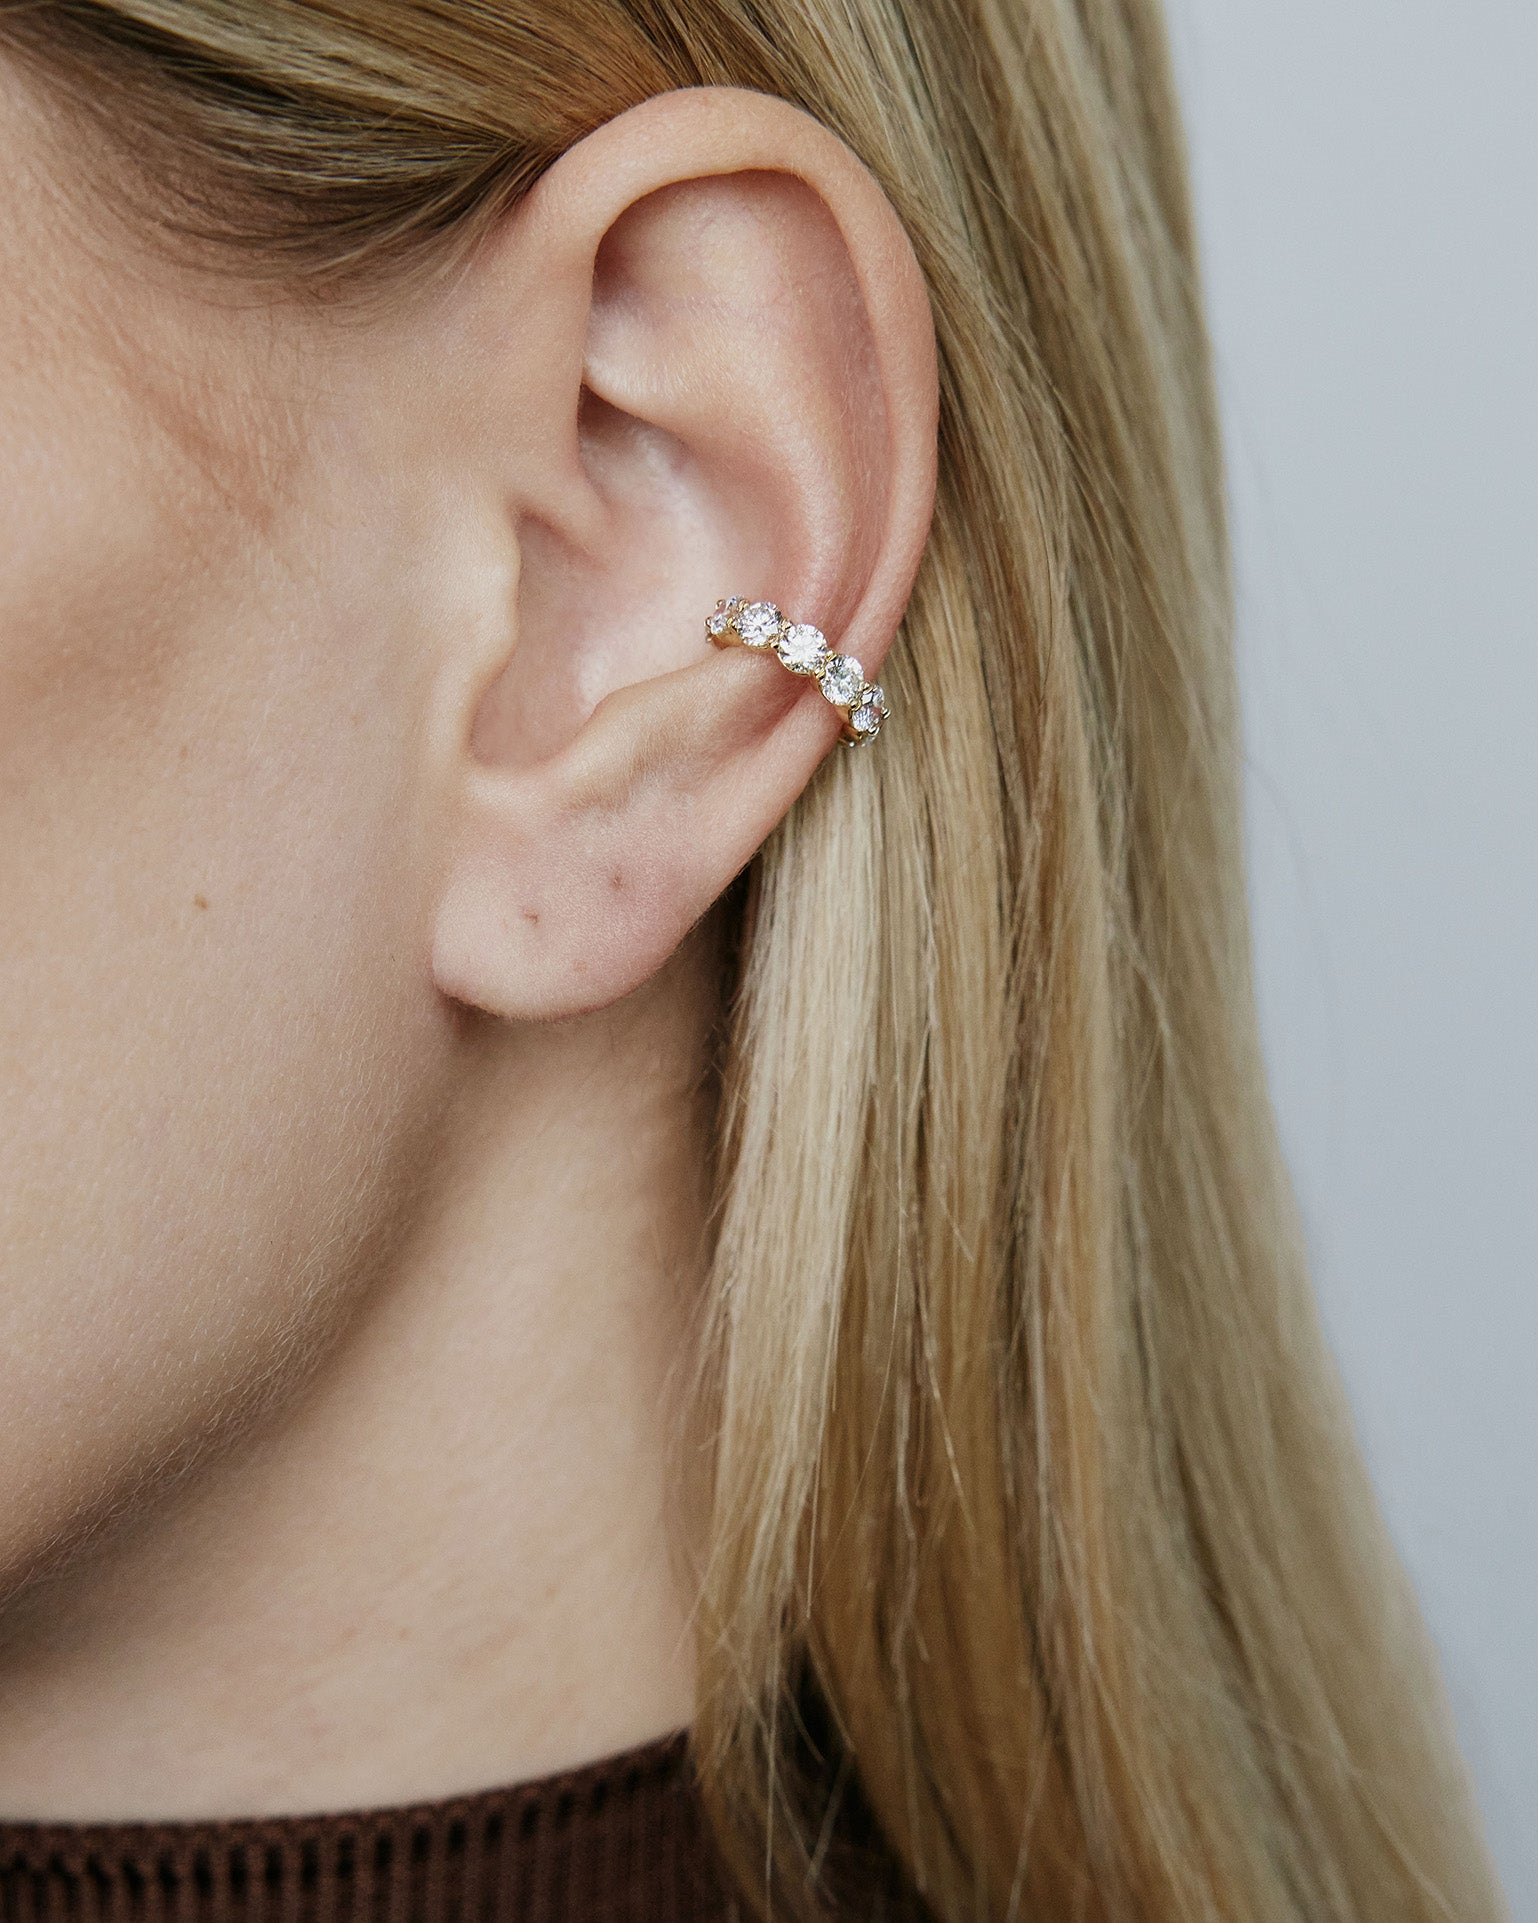 Image of diamond ear cuff on model's ear.